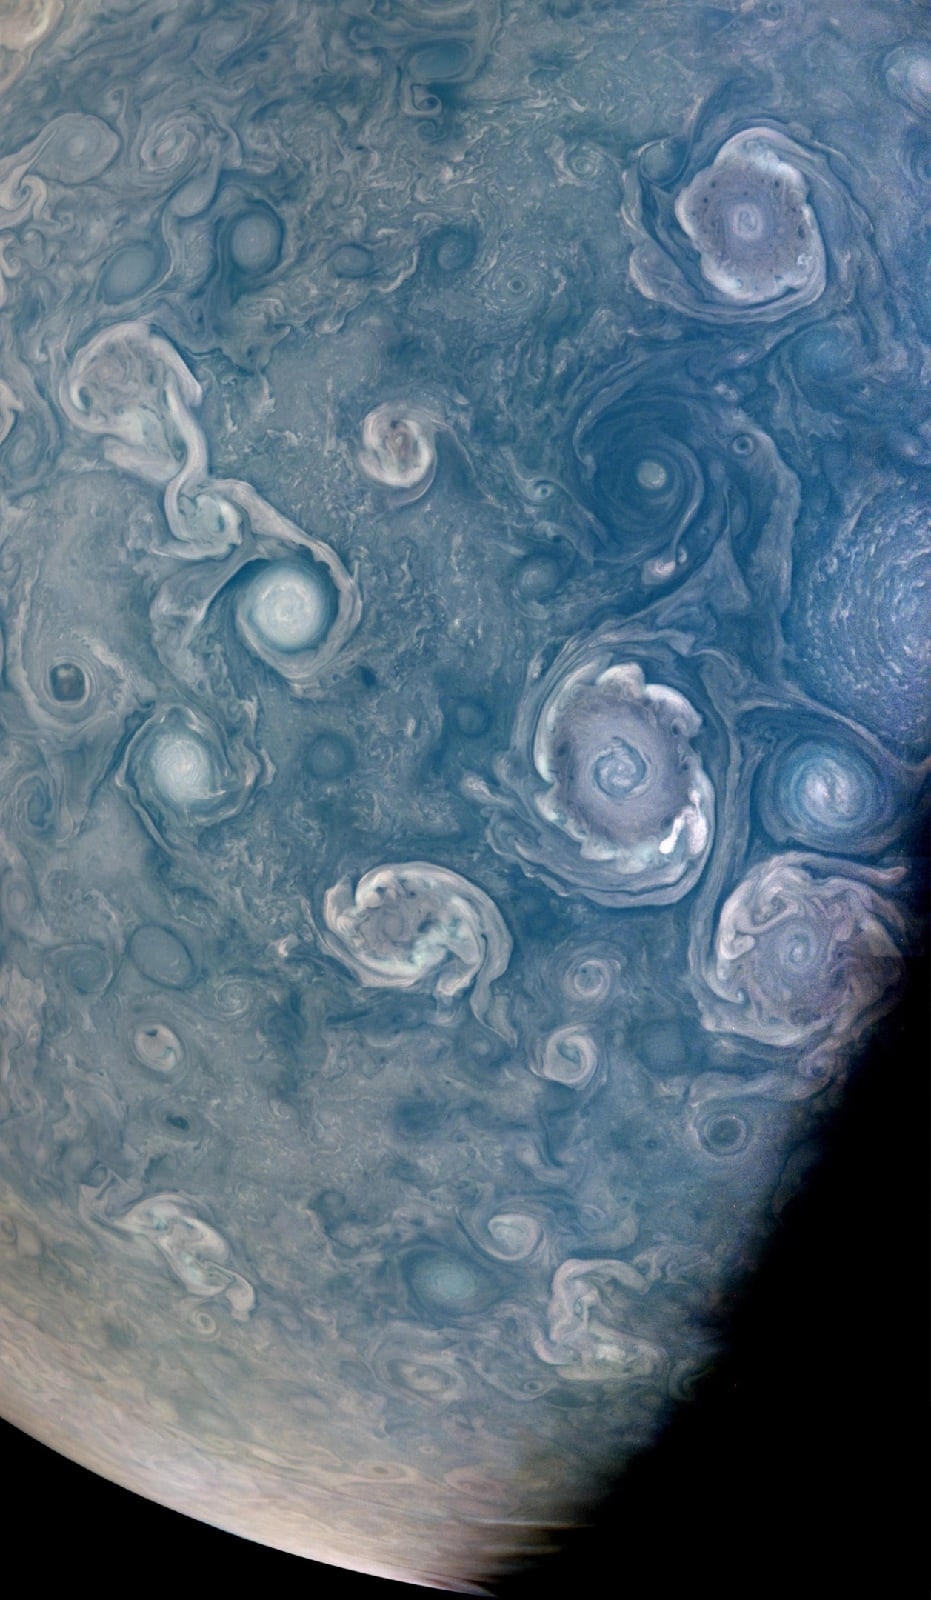 Ловите фото штормов на Юпитере с космического аппарата Juno.